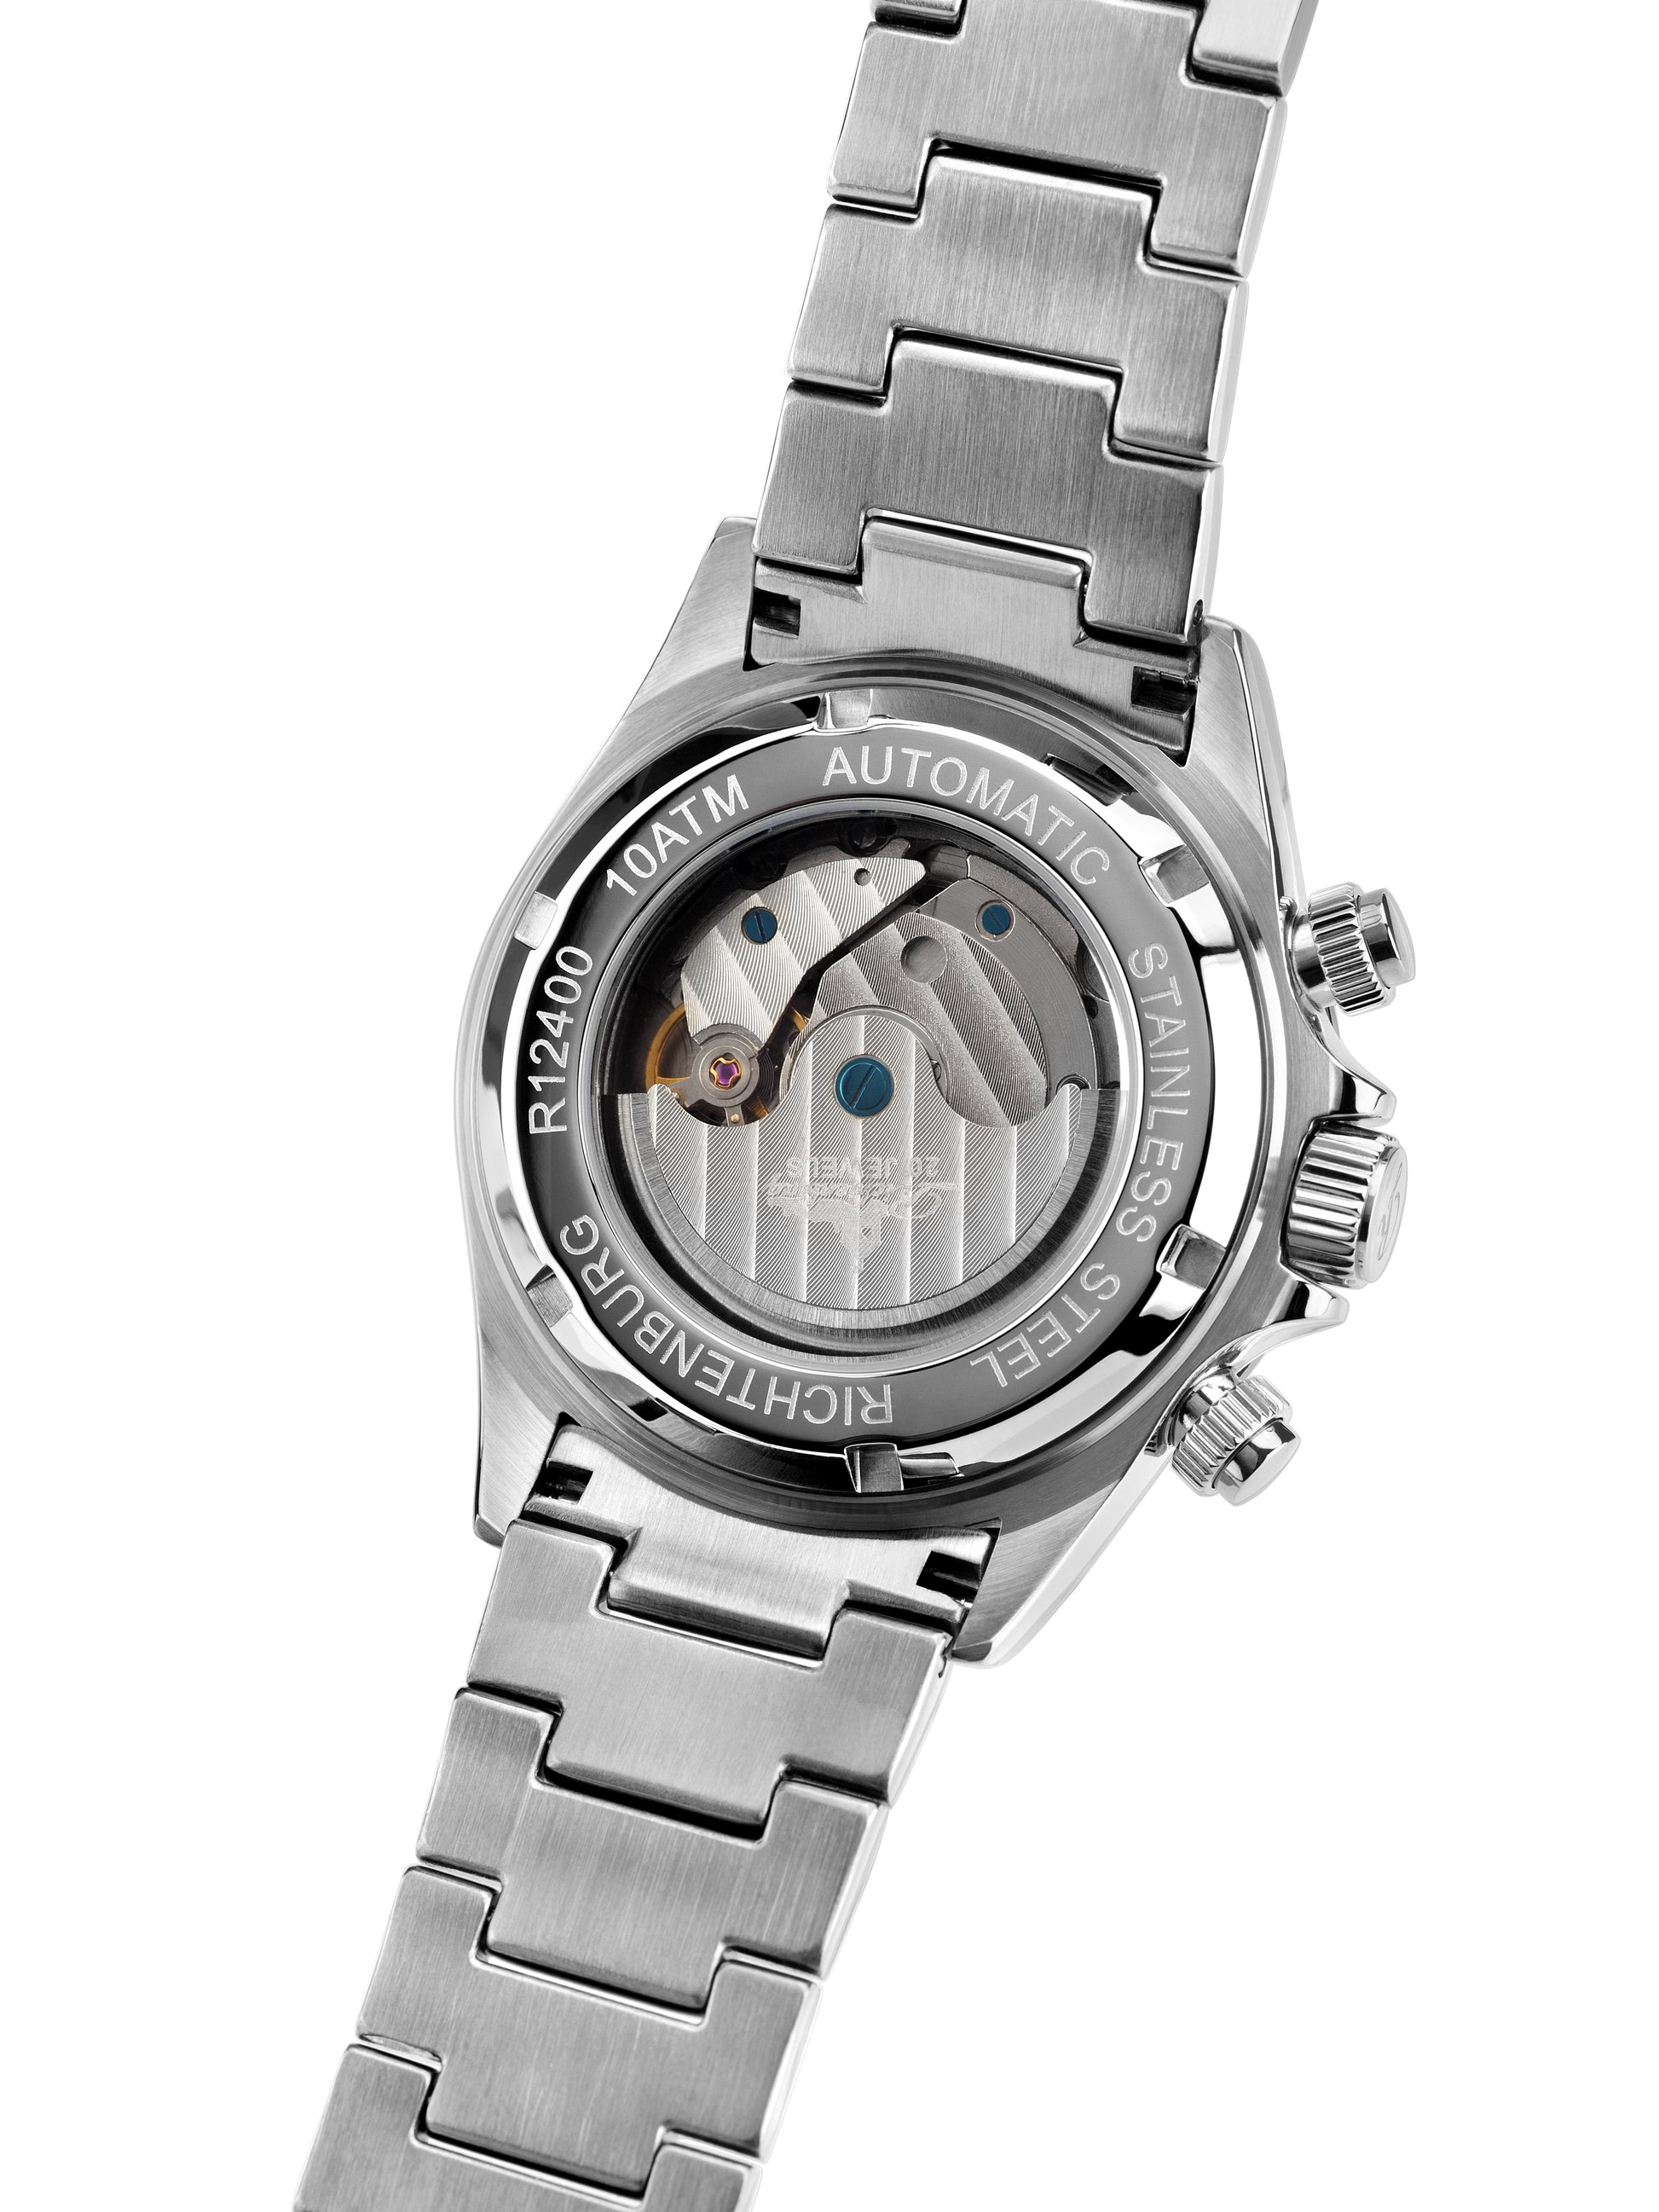 Automatic watches — Fastpace — Richtenburg — steel silver